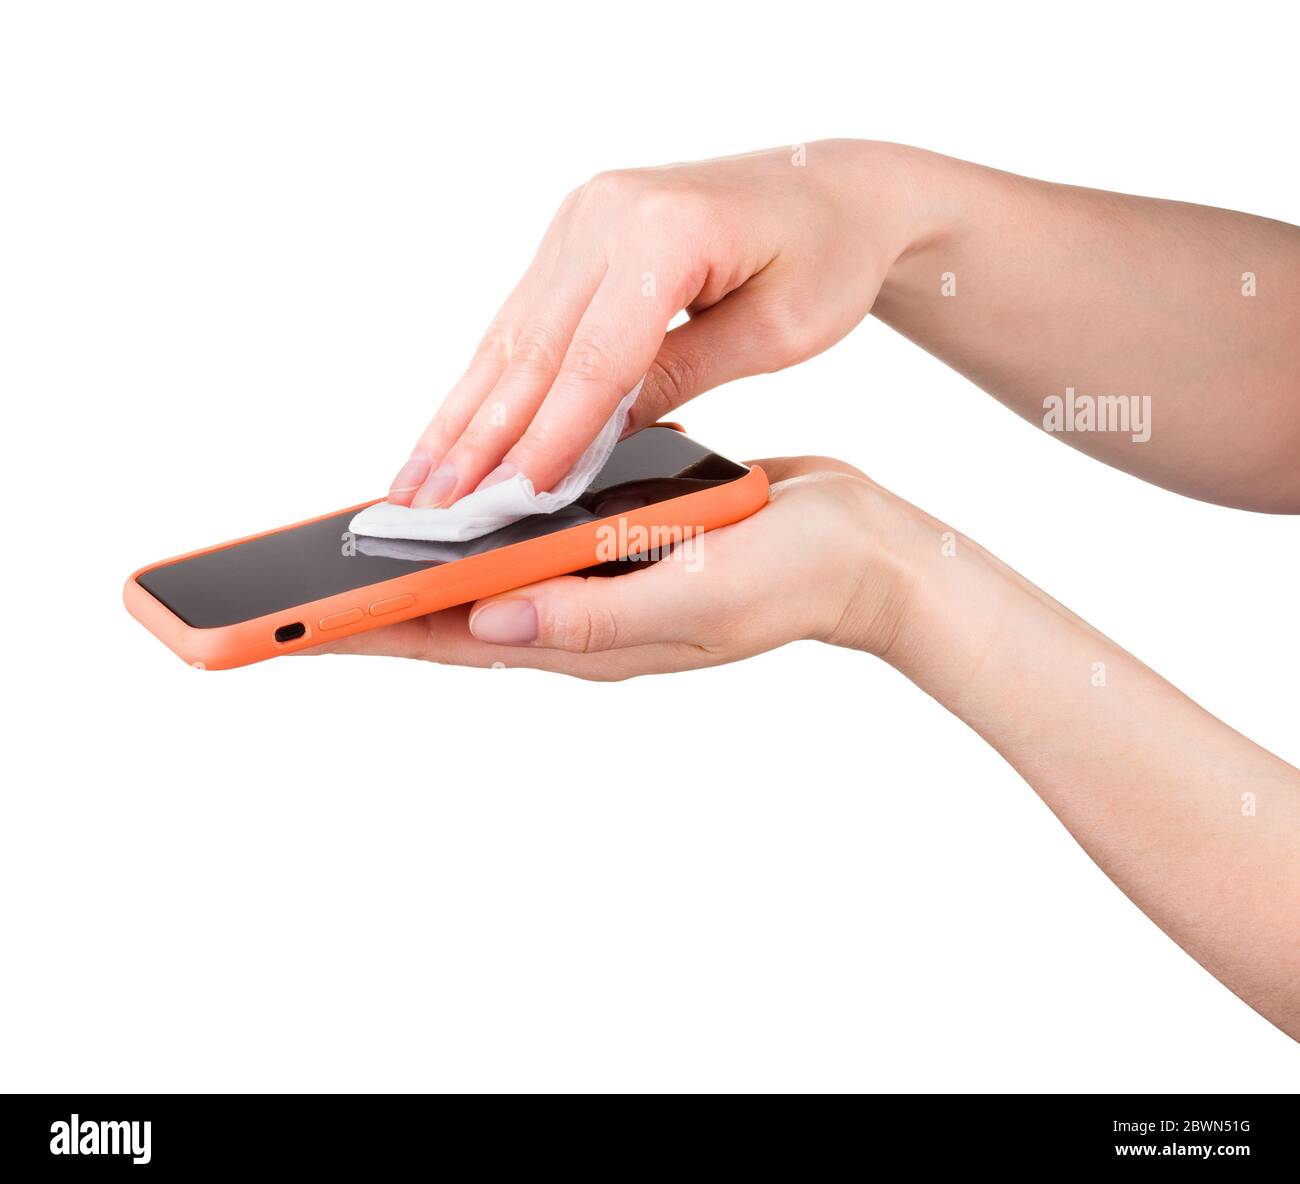 Donna mano telefono cellulare pulito da wet wipe isolato su sfondo bianco Foto Stock